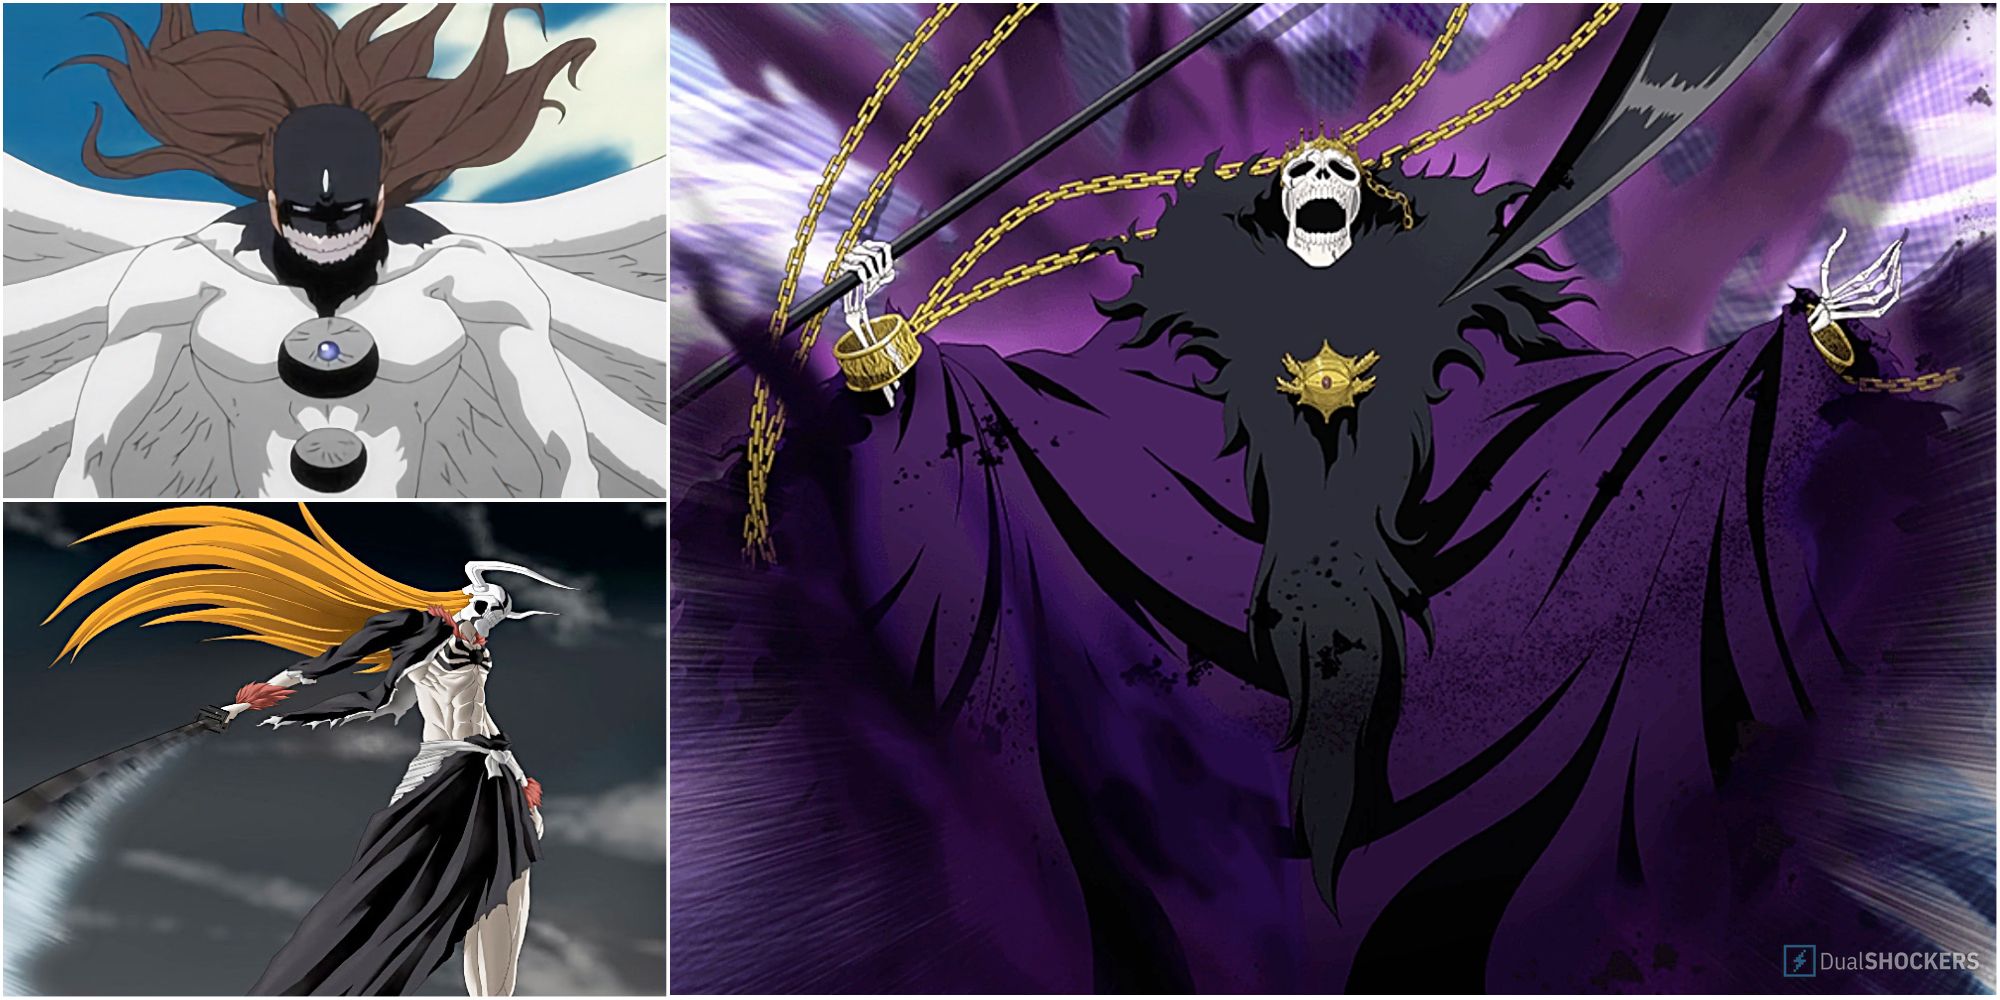 Bleach: Ichigo's Most Powerful Abilities, Ranked